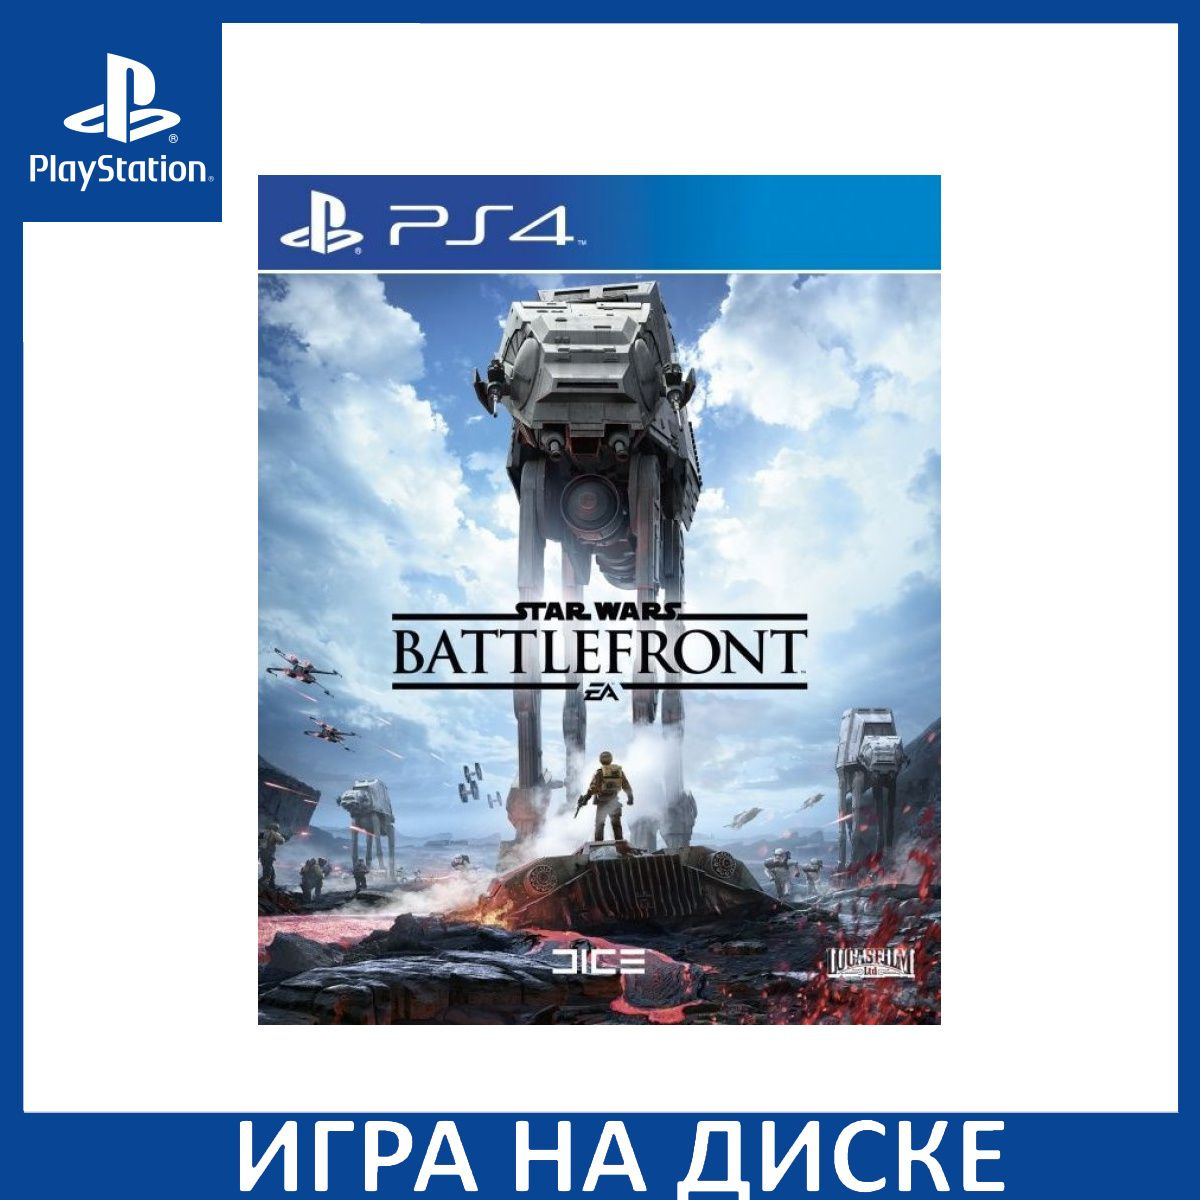 Диск с Игрой Star Wars: Battlefront (PS4). Новый лицензионный запечатанный диск.